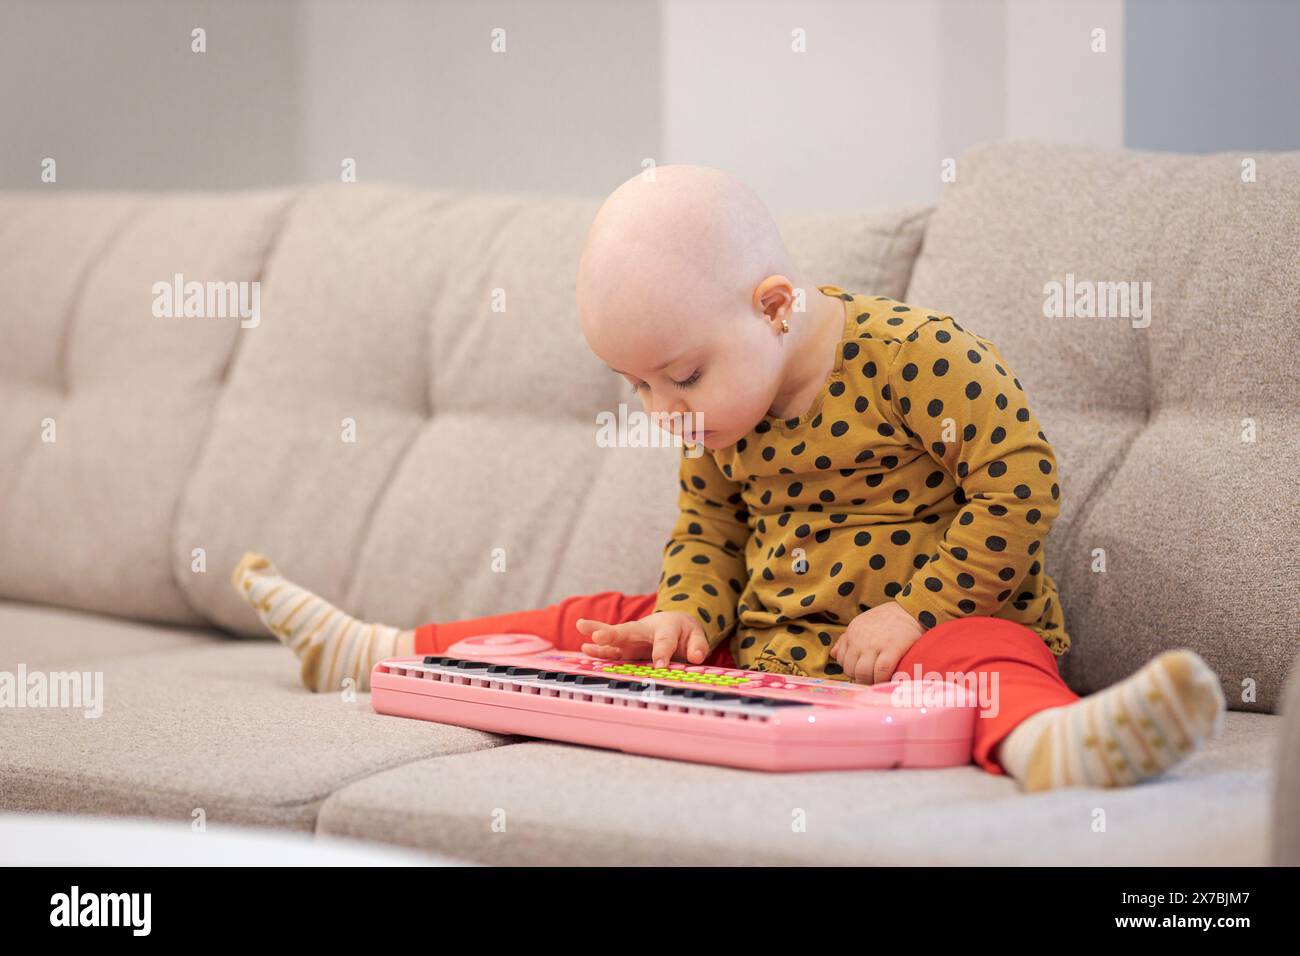 Bébé fille avec cancer et perte de cheveux due à la chimiothérapie jouant avec un piano sur le canapé Banque D'Images